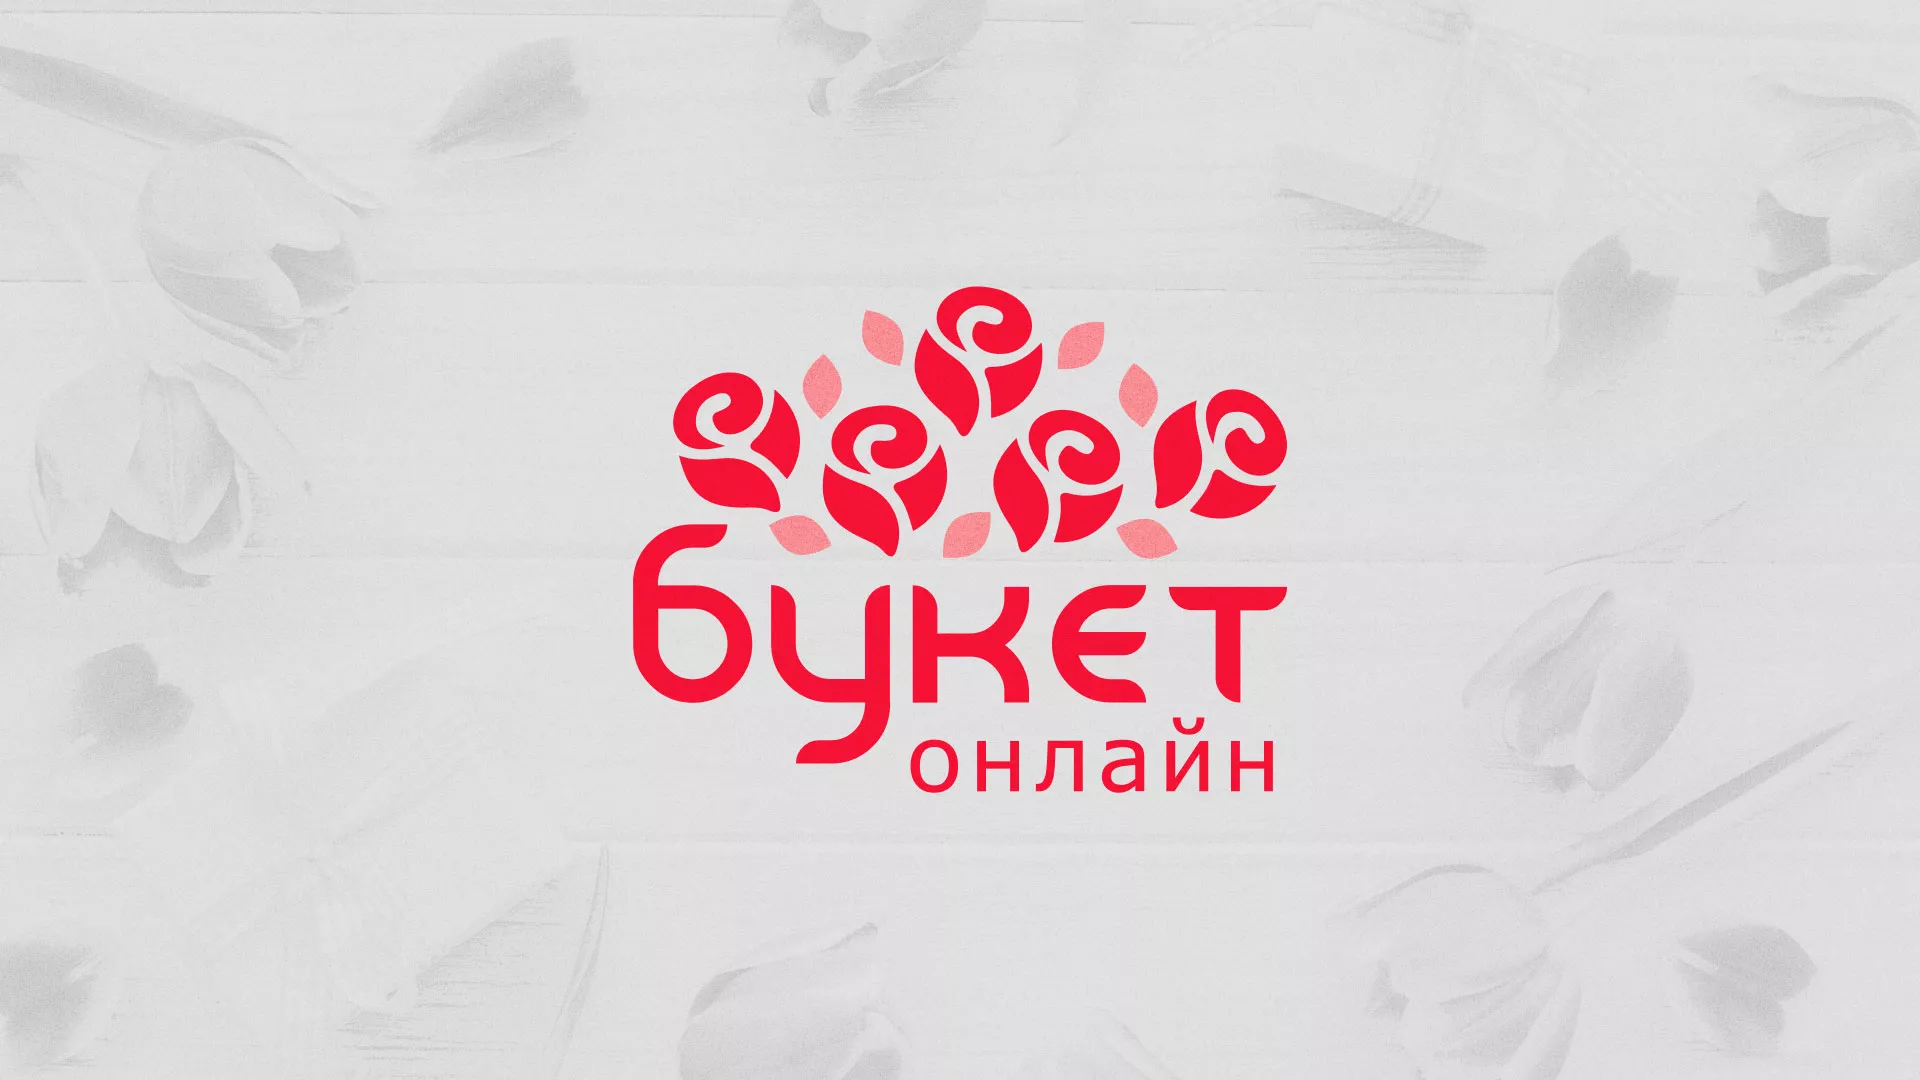 Создание интернет-магазина «Букет-онлайн» по цветам в Байкальске